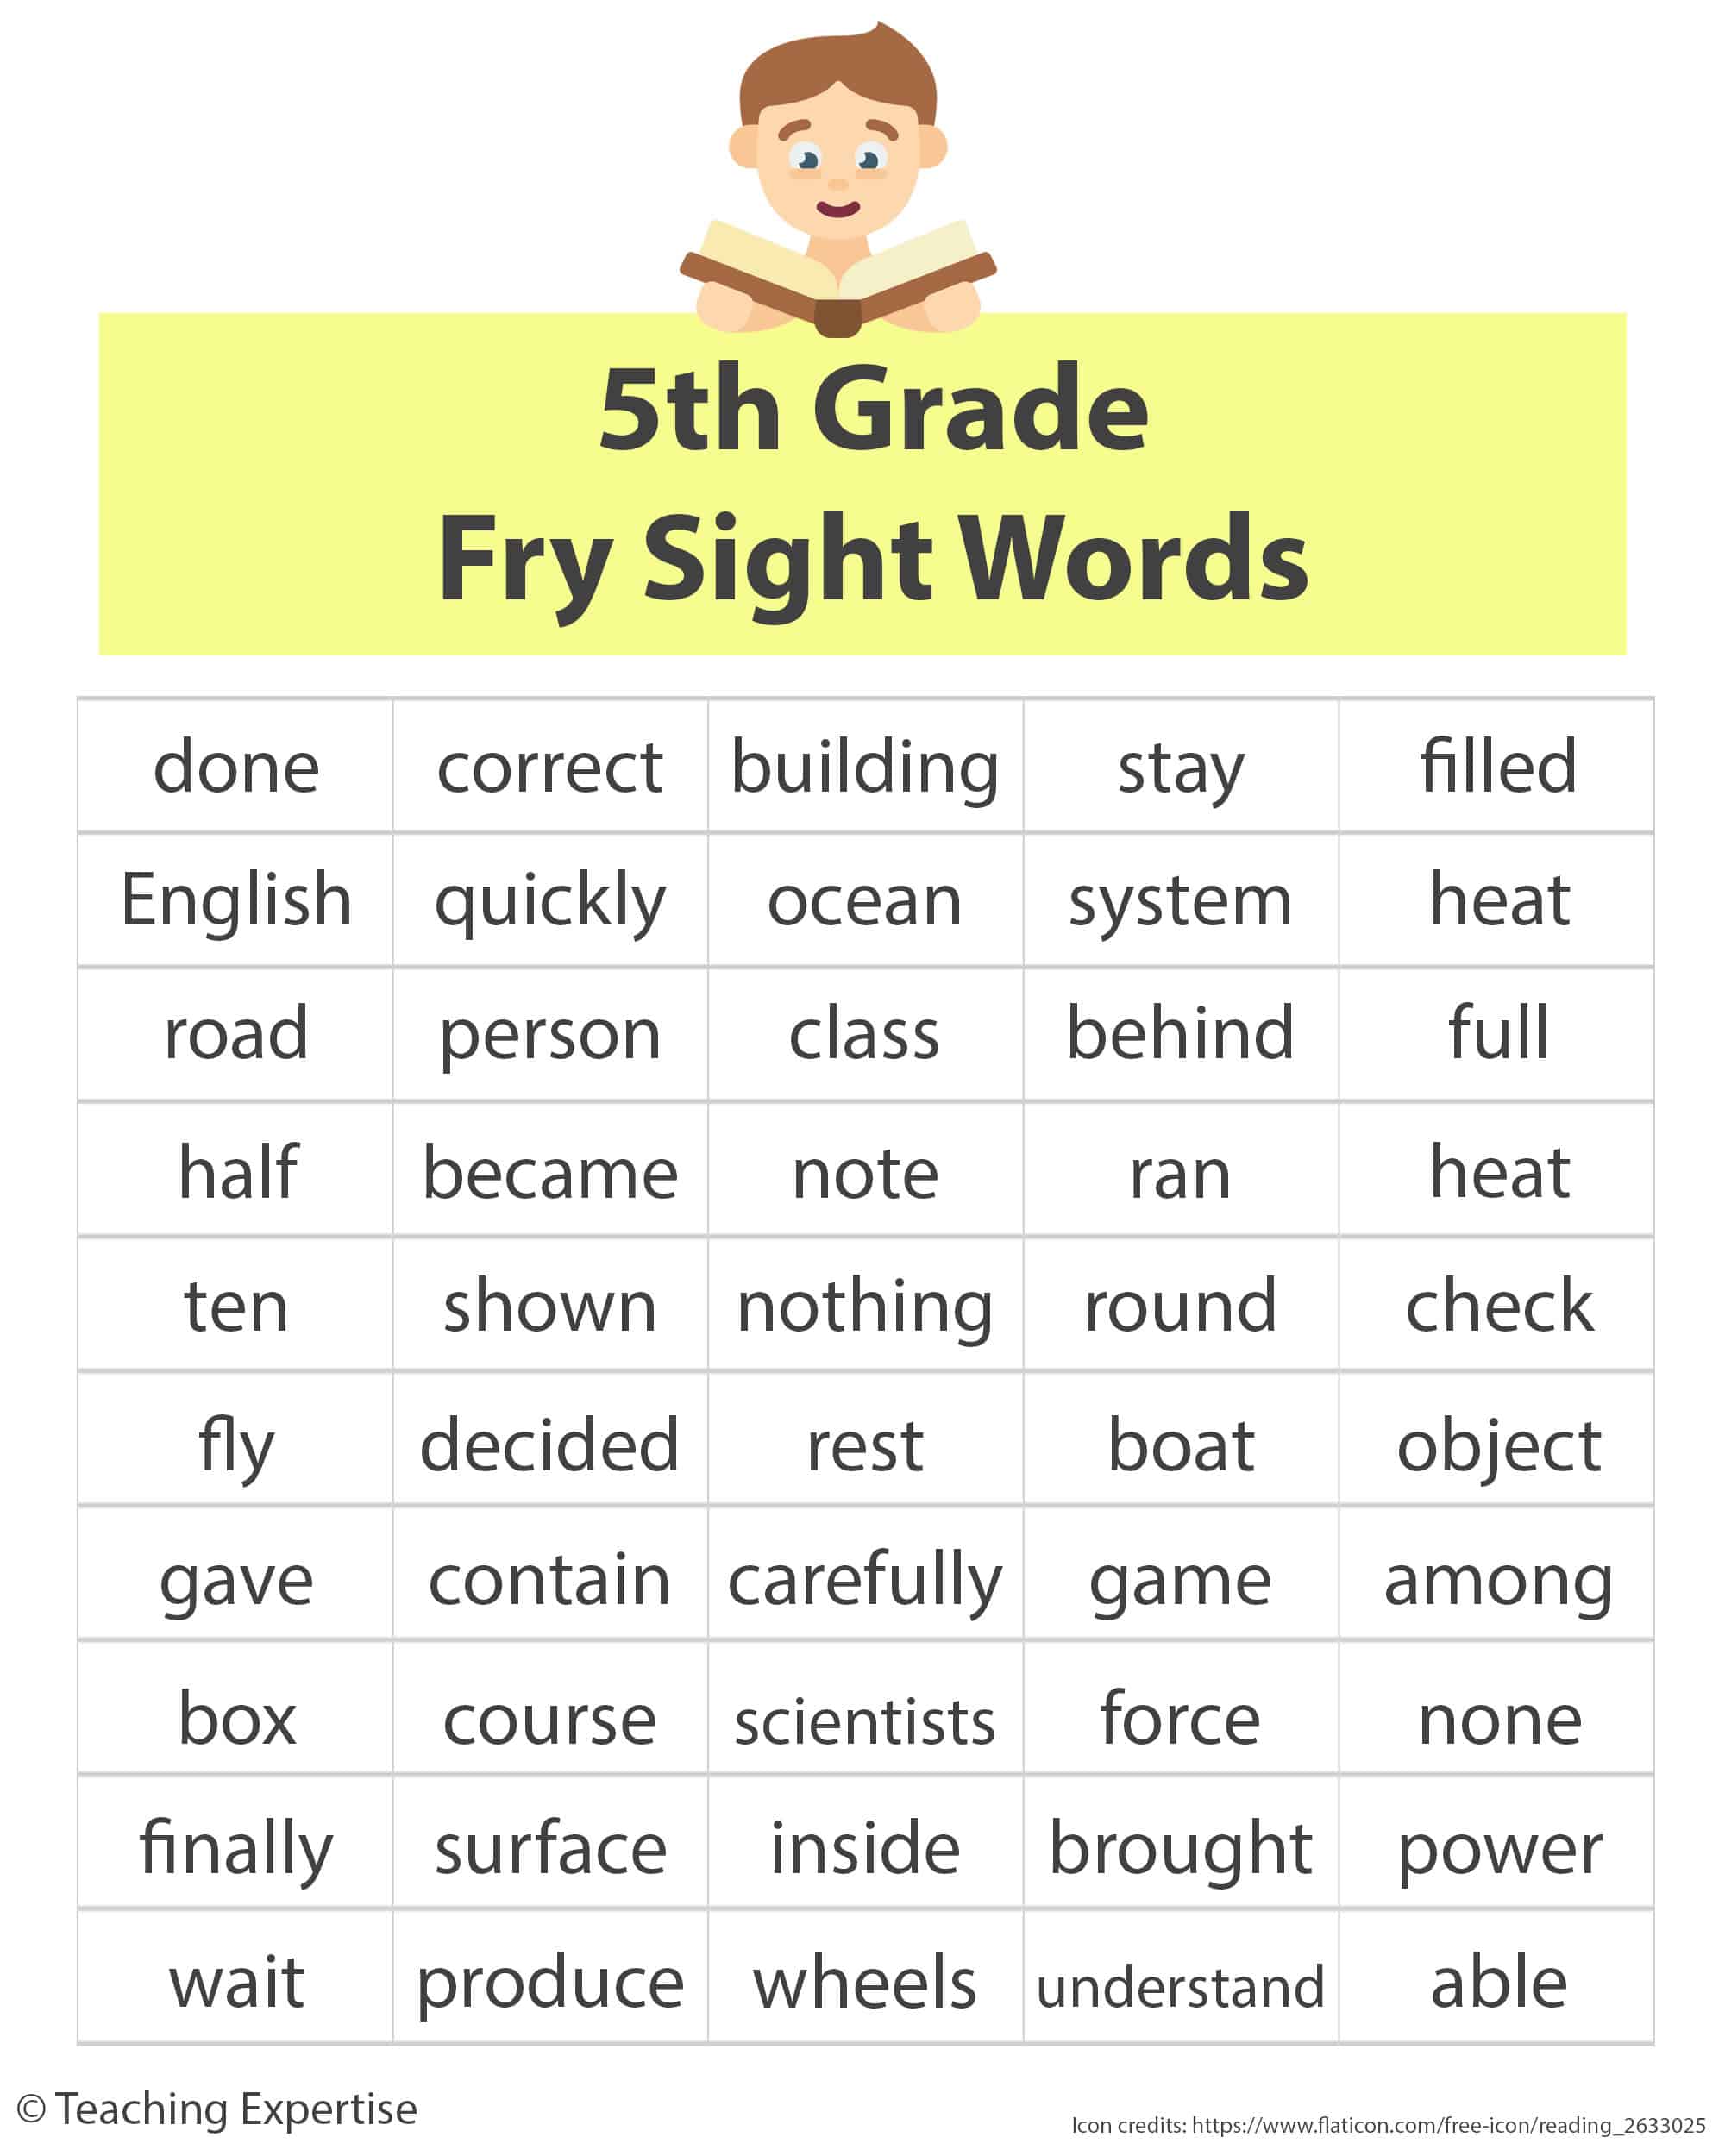 5th grade fry sight words